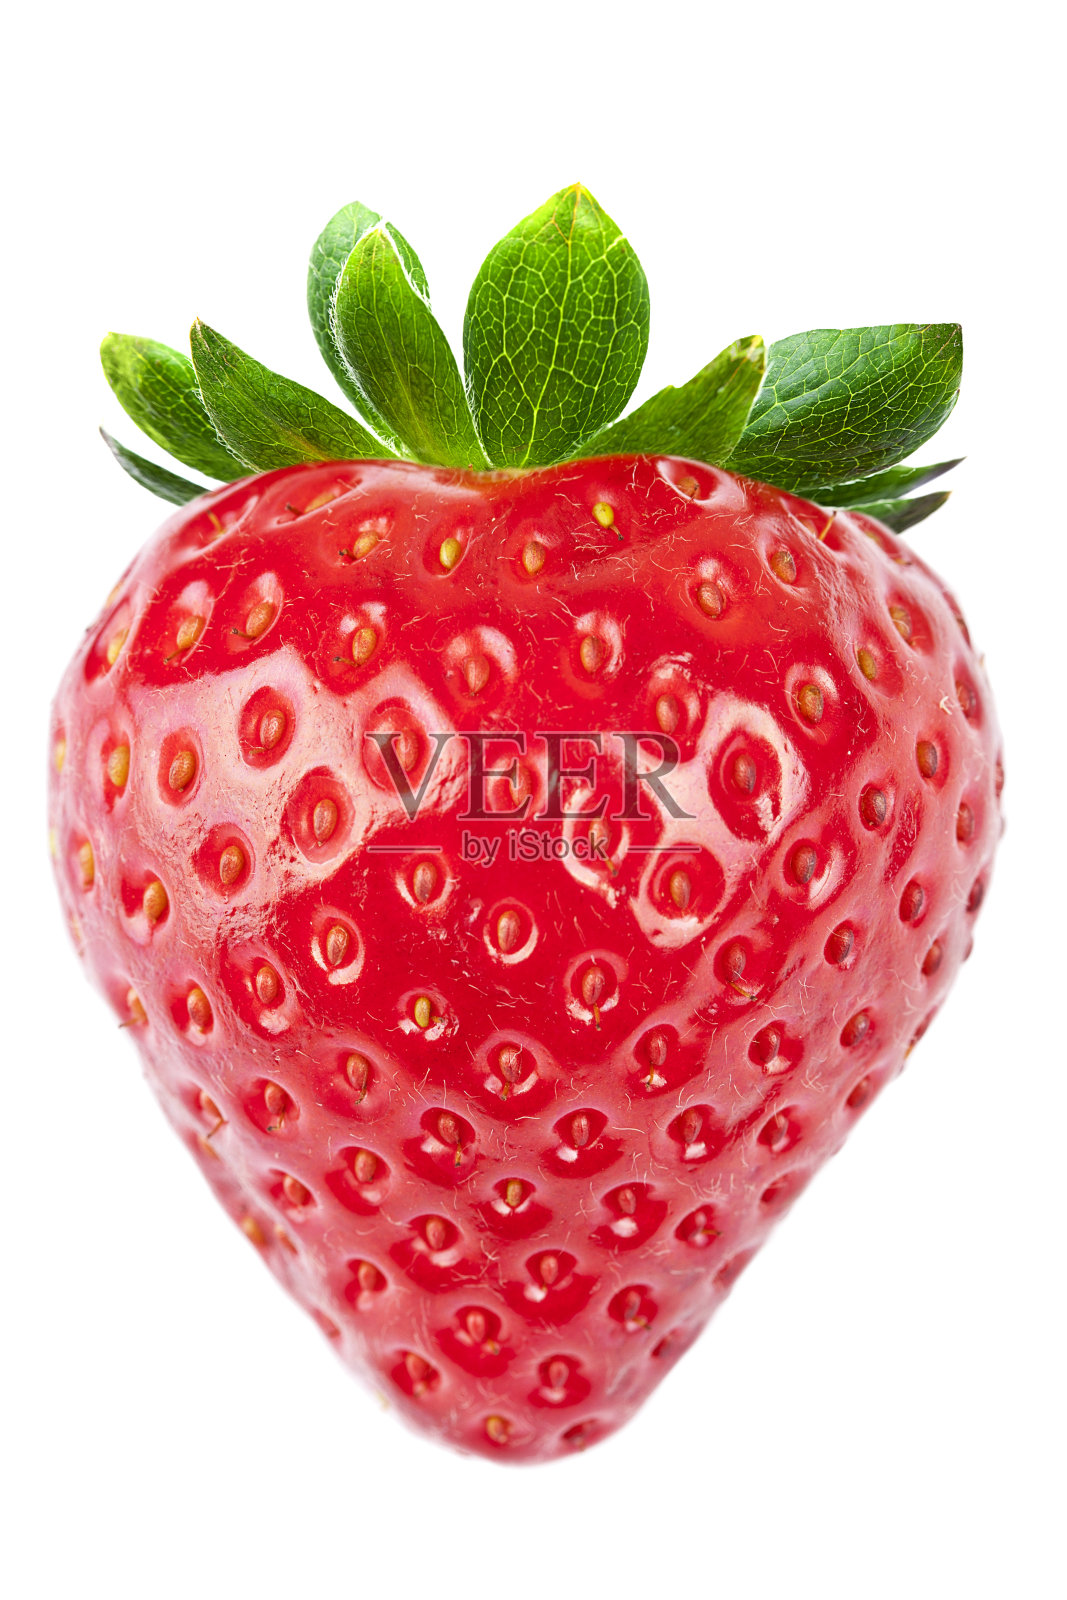 鲜草莓(心型)照片摄影图片